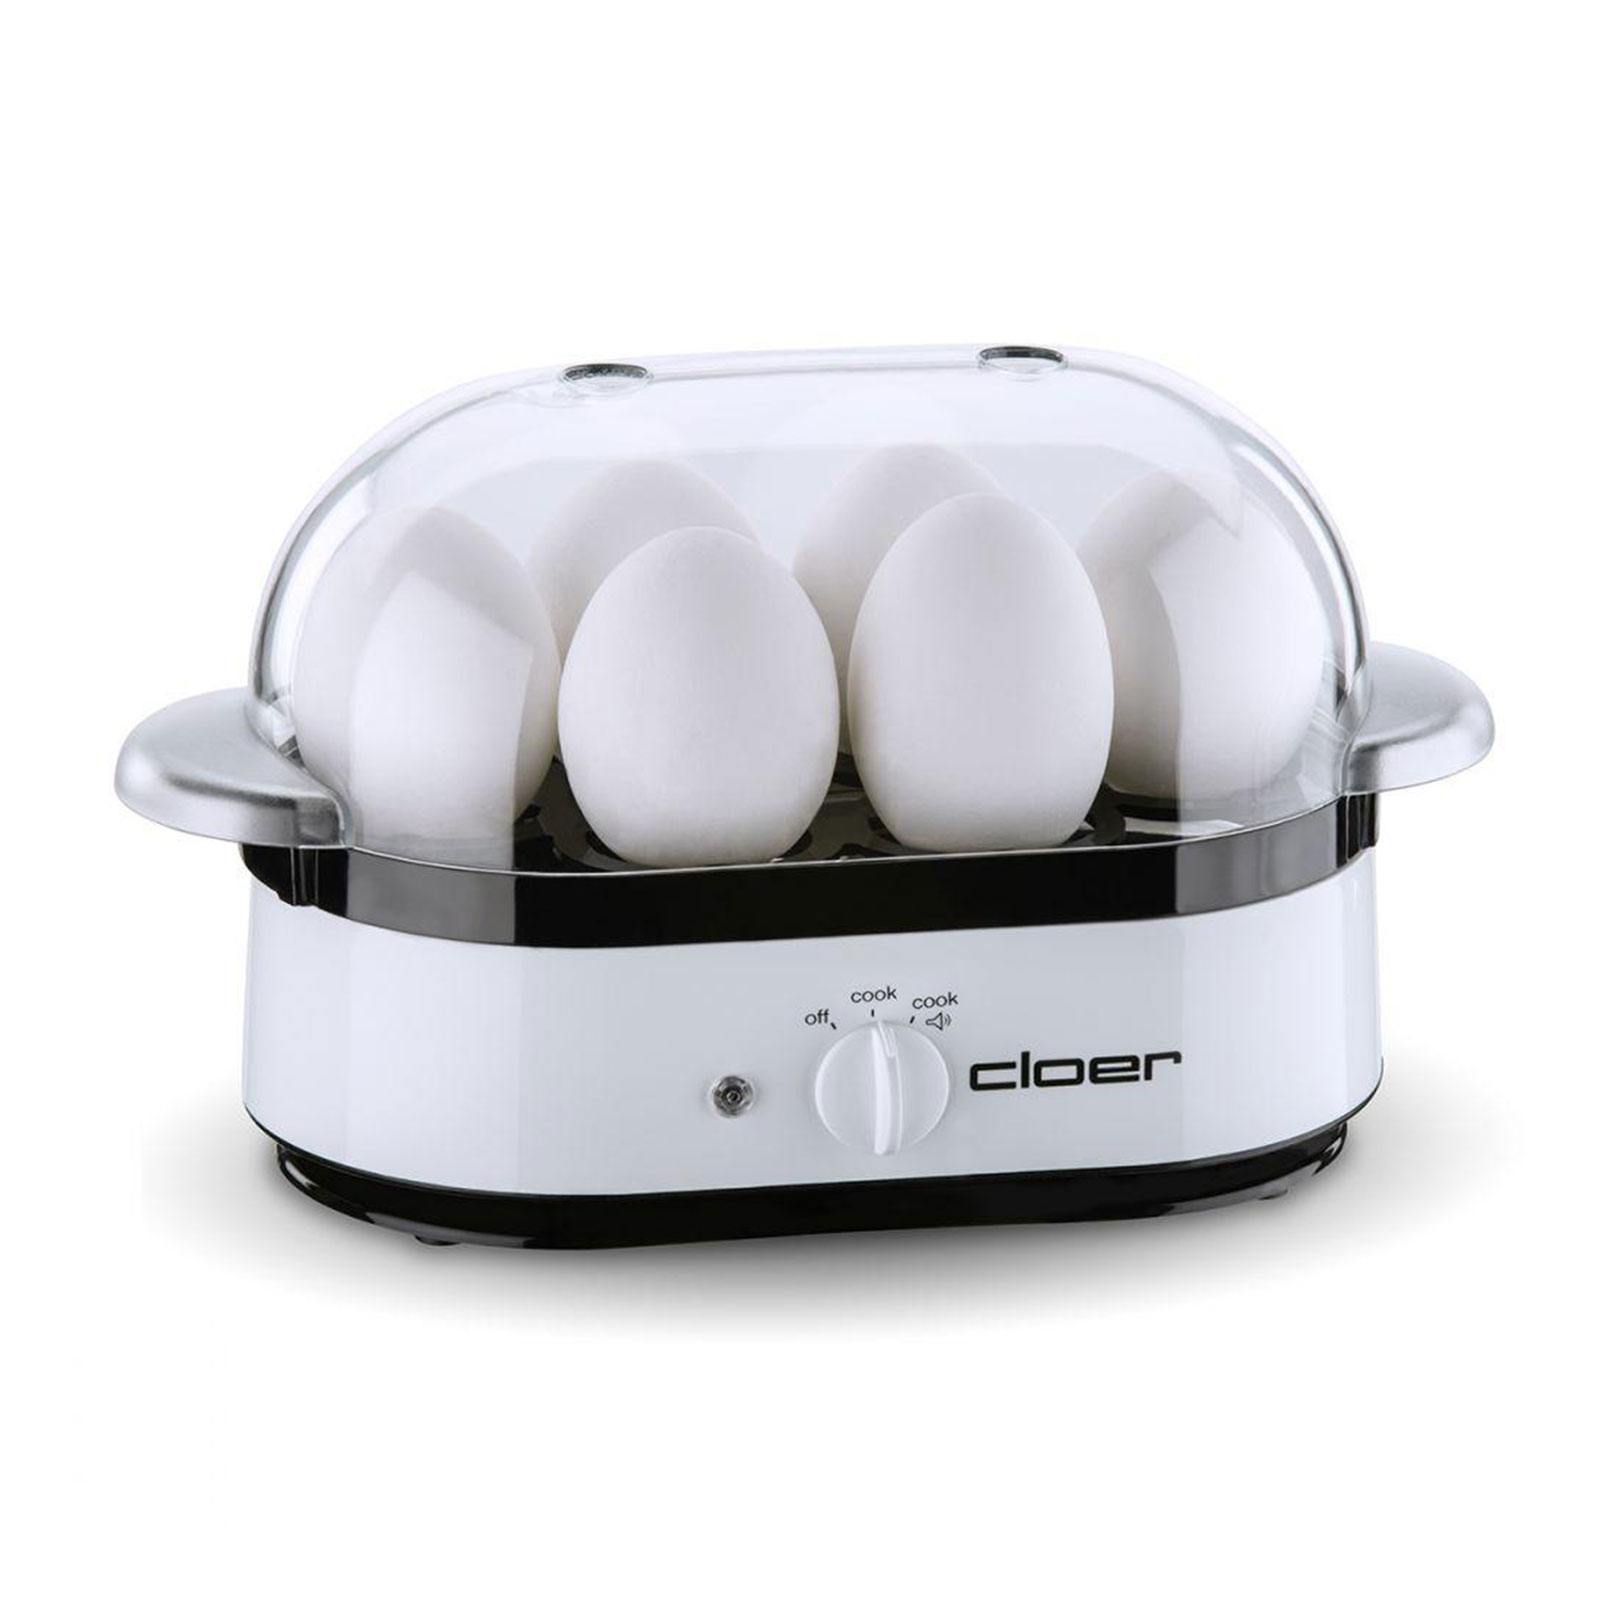 Cloer 6081 Eierkocher weiß